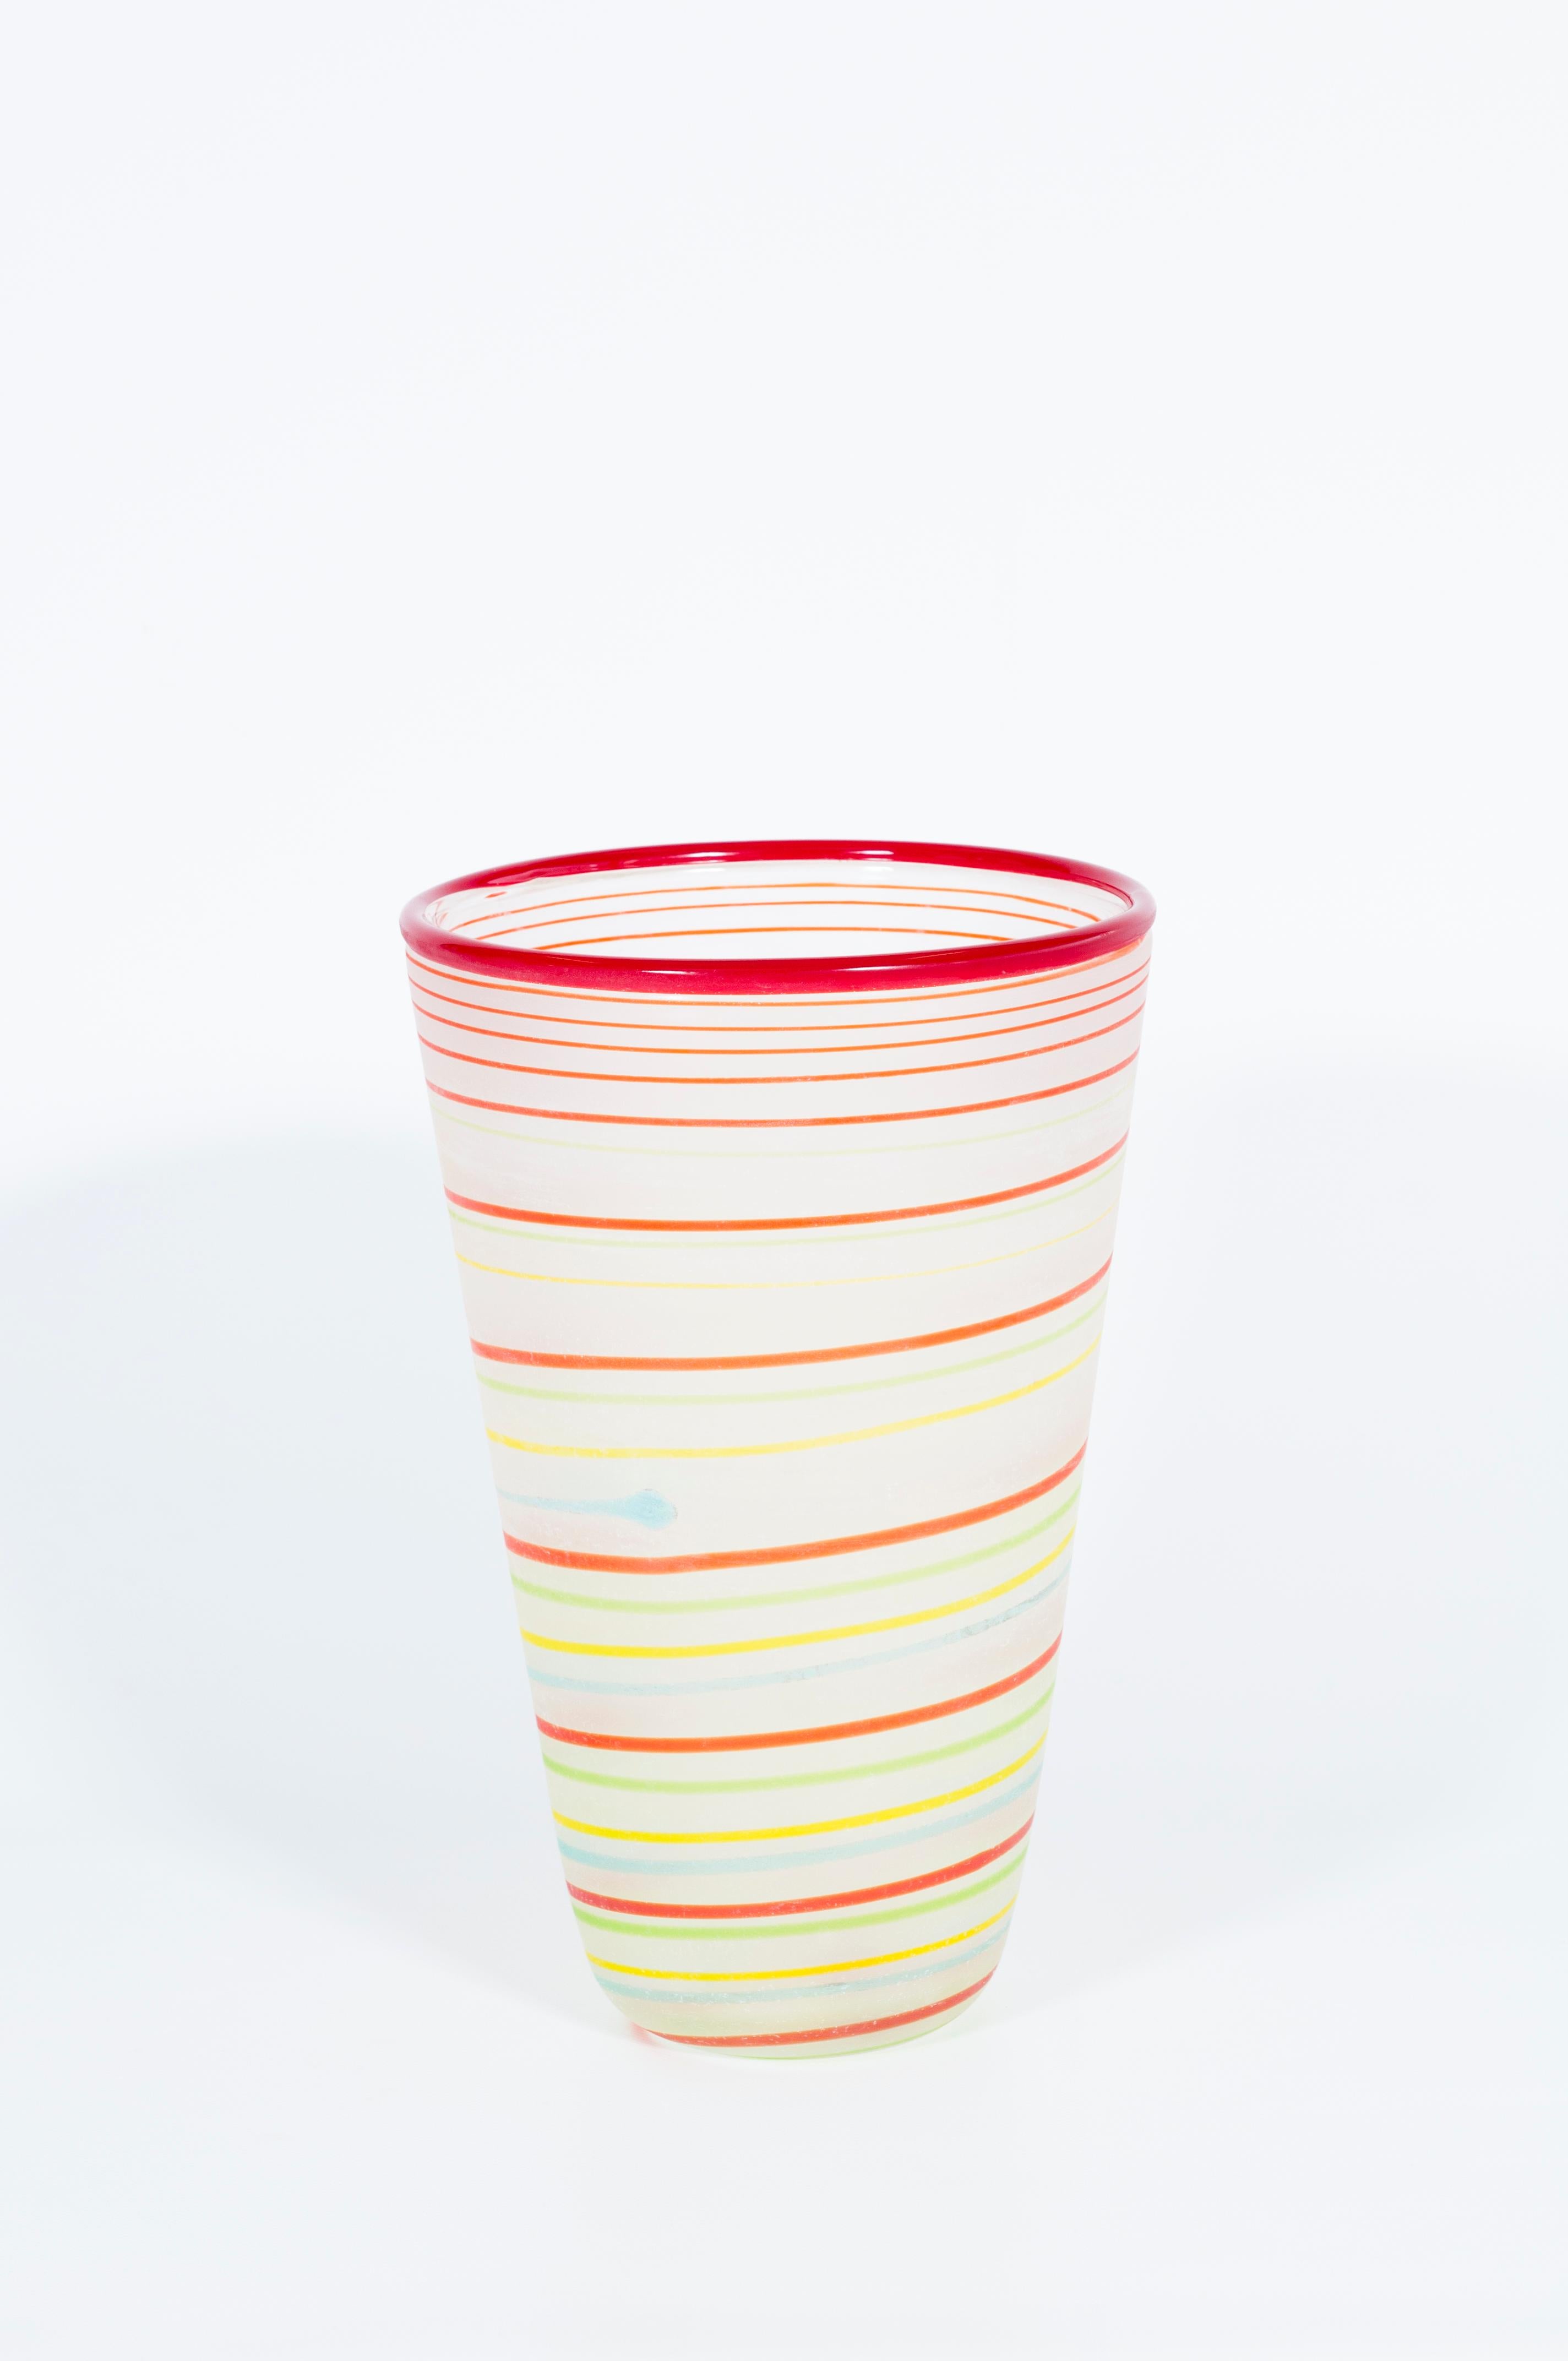 Zeitgenössische Vase aus mehrfarbigem Murano-Glas Signiert von Cenedese 1990er Jahre Italien.
Diese wunderbare Vase wird dank ihres künstlerischen Designs zum Blickfang in Ihrem Haus. Die unregelmäßigen Muster aus mehrfarbigen untergetauchten